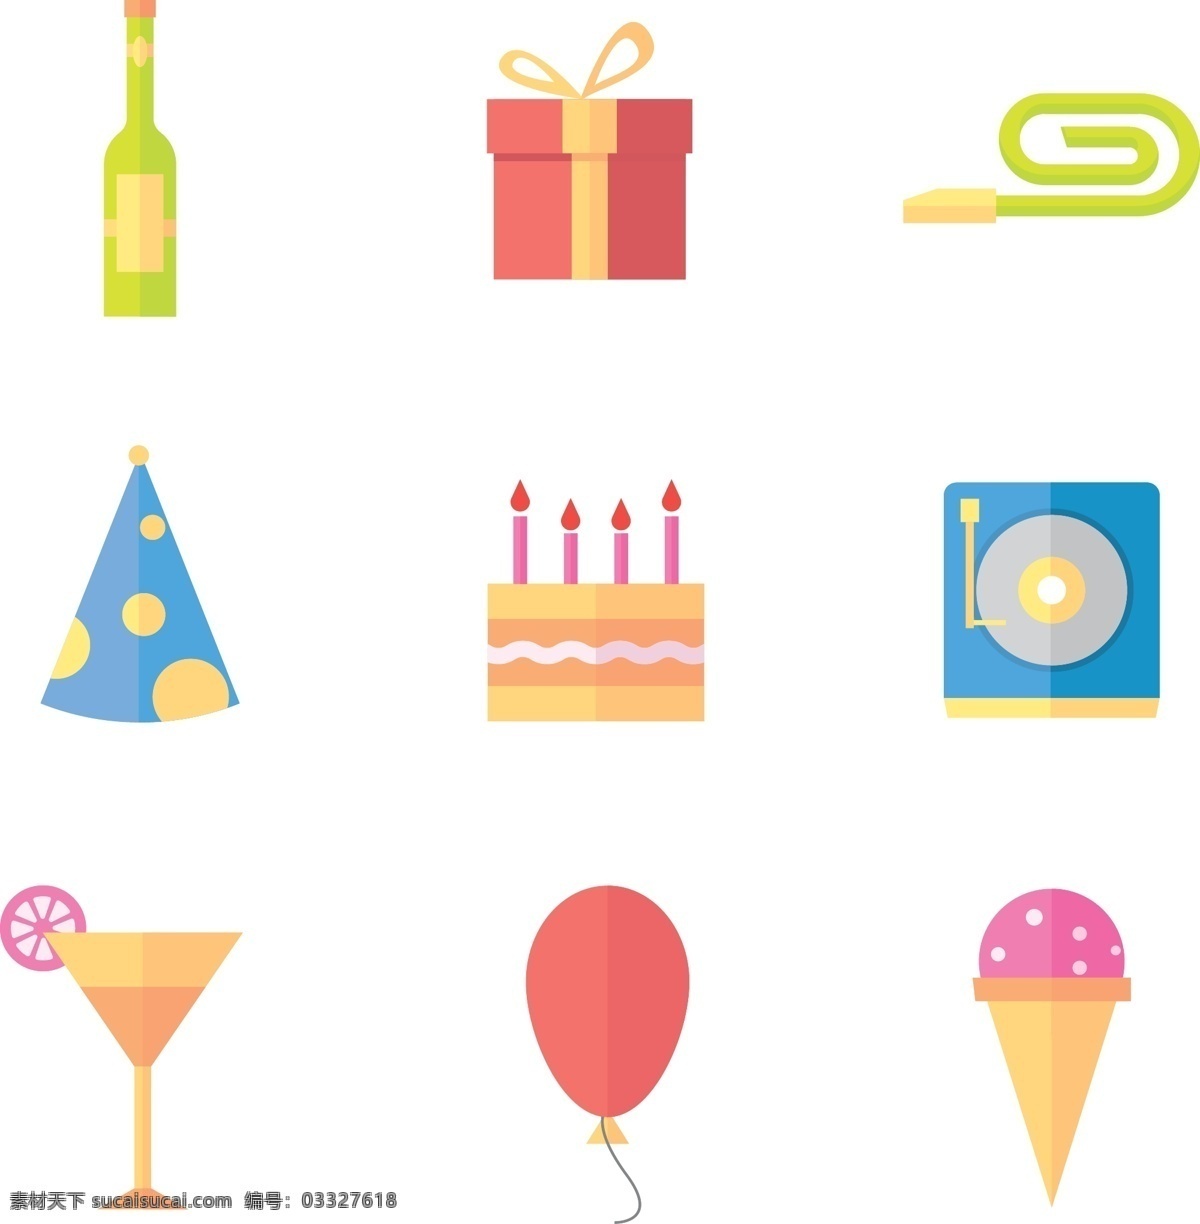 扁平派对图标 饮料 饮料素材 矢量素材 饮料图标 生日会 生日会图标 气球 派对图标 蛋糕 雪糕 礼物